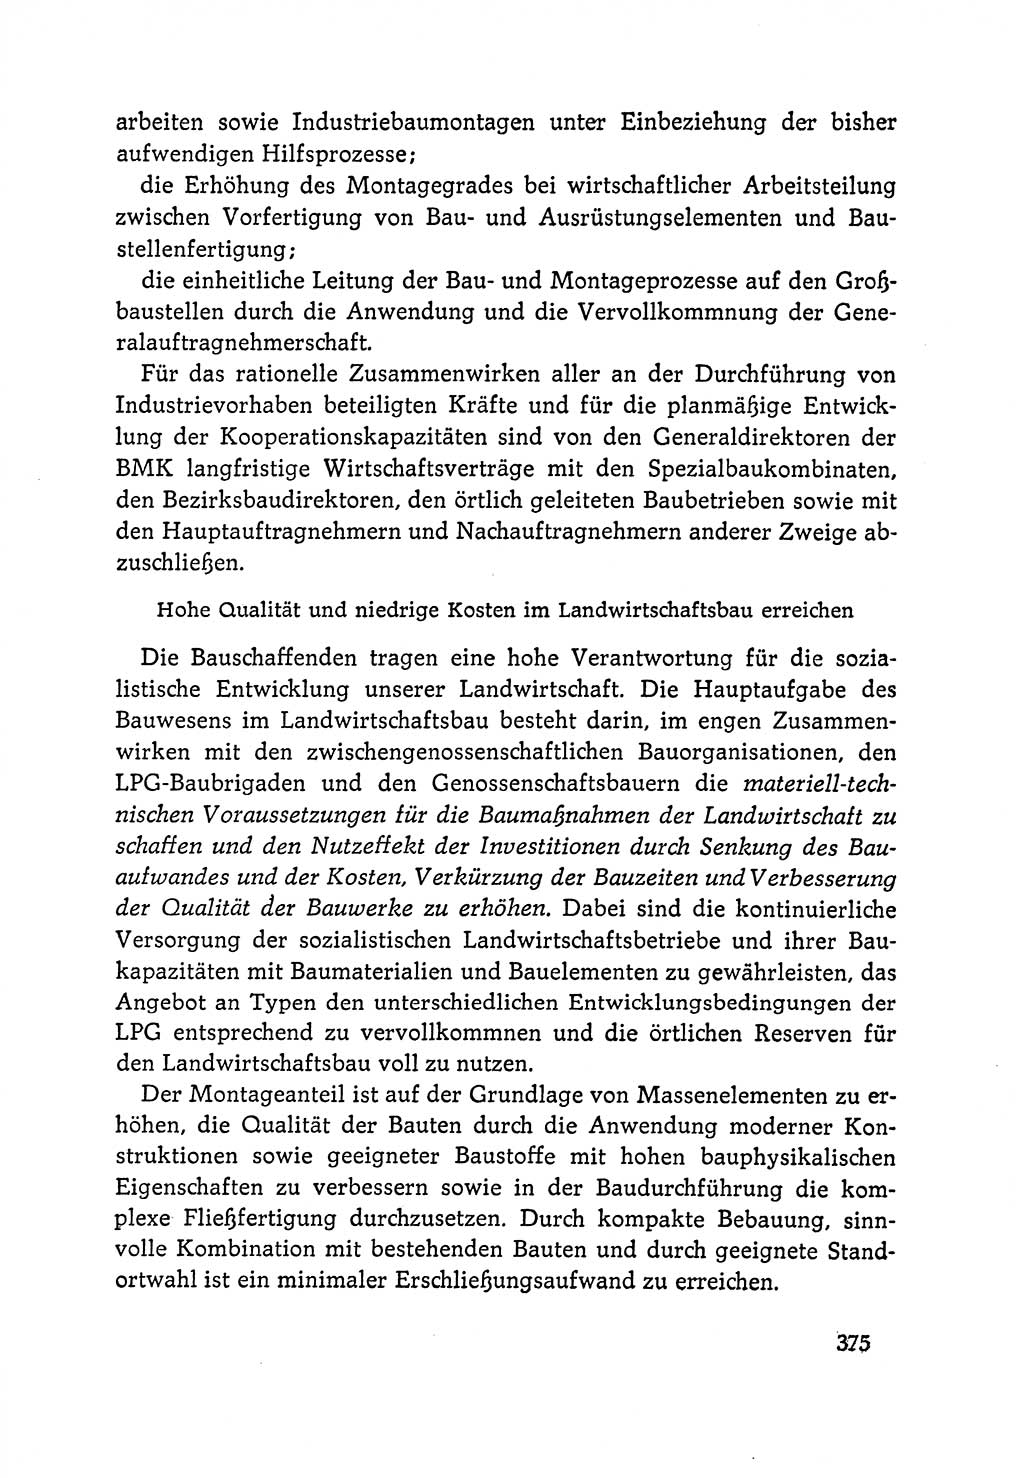 Dokumente der Sozialistischen Einheitspartei Deutschlands (SED) [Deutsche Demokratische Republik (DDR)] 1964-1965, Seite 375 (Dok. SED DDR 1964-1965, S. 375)